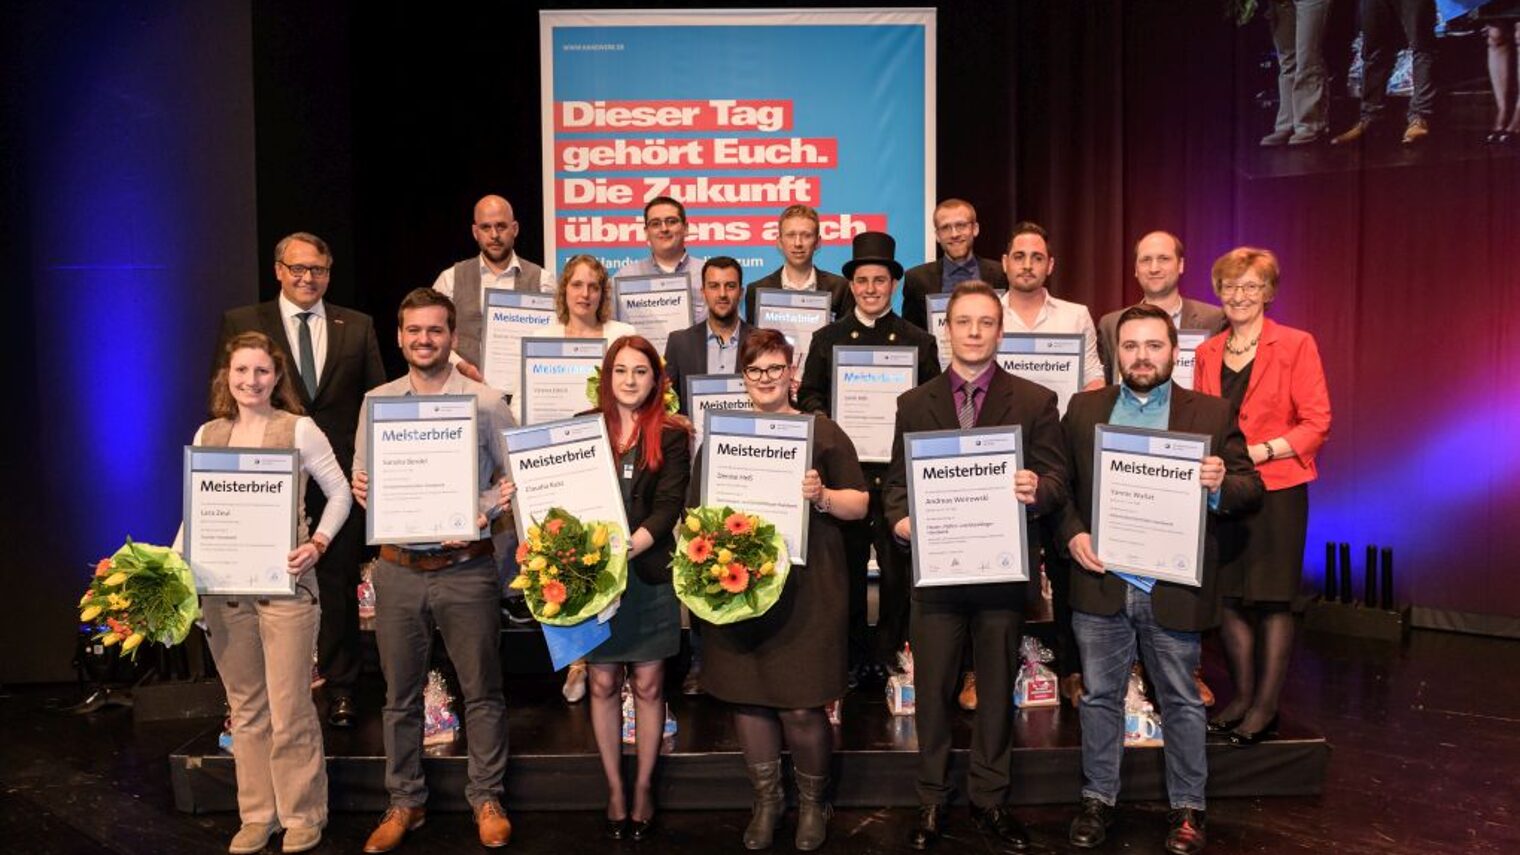 Meisterfeier 2018 - HWK Pfalz